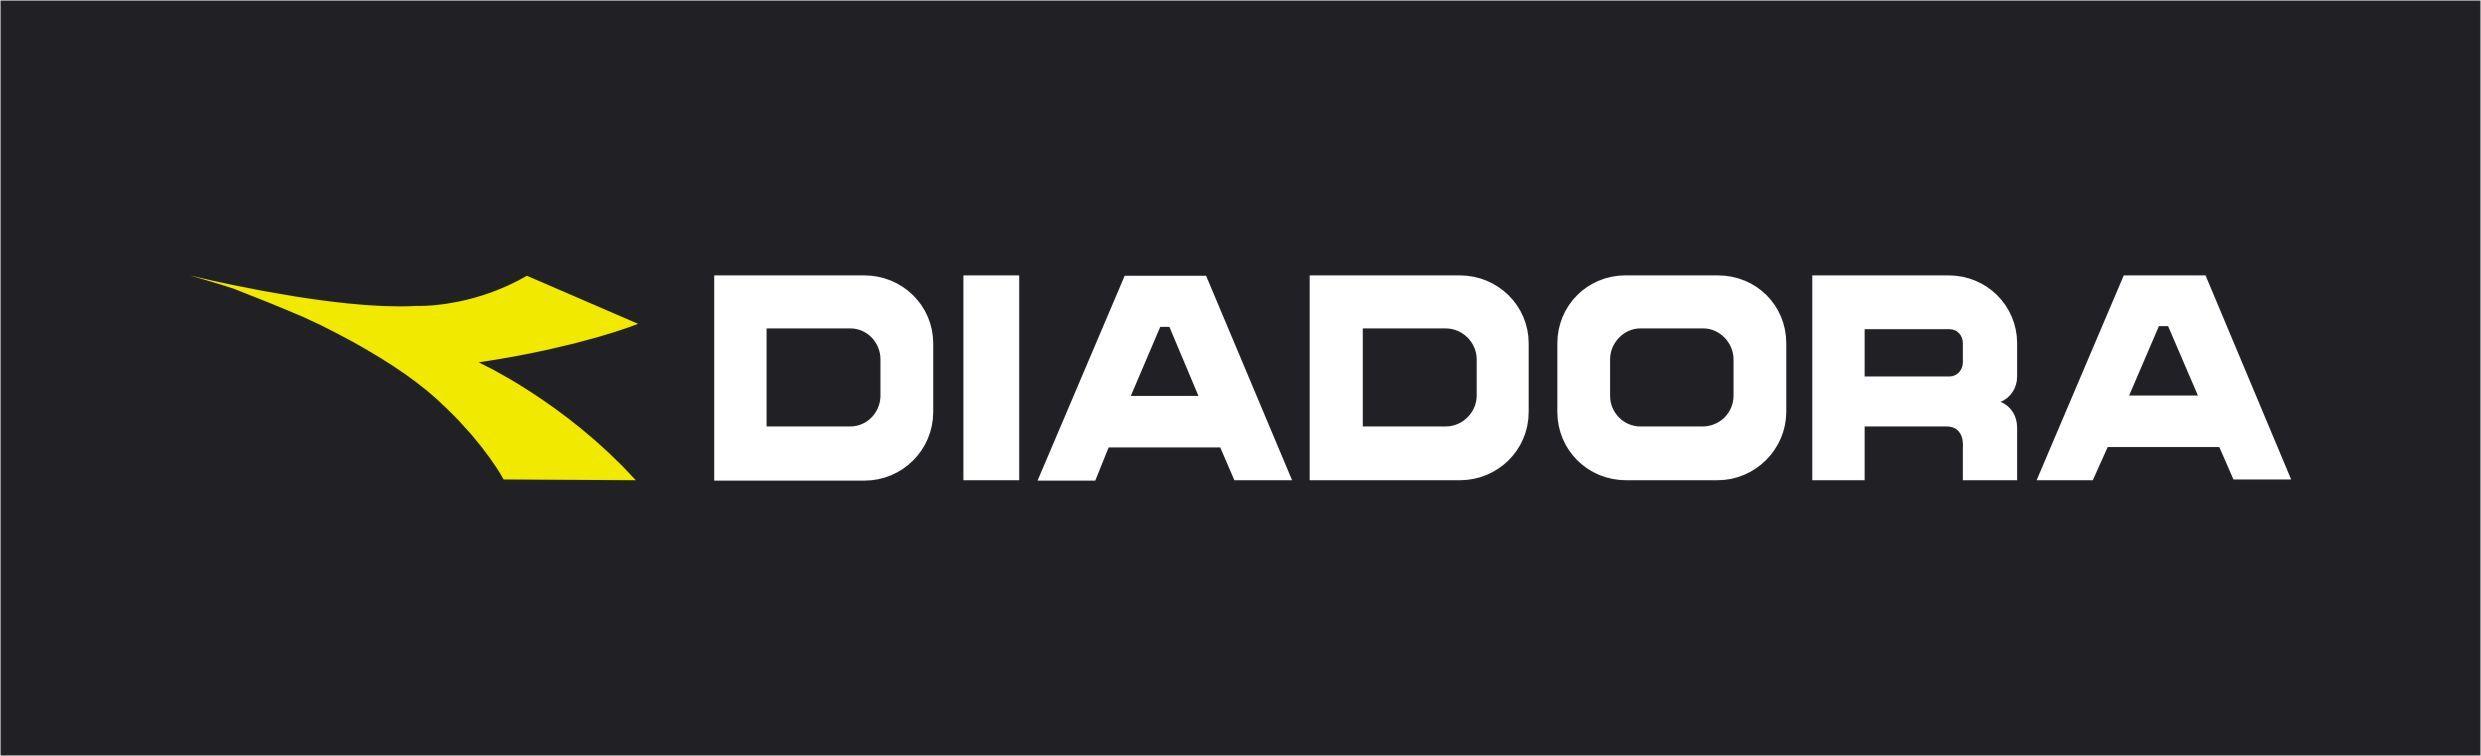 Diadora Logo - Shopping in the Treviso province - Come to Italy